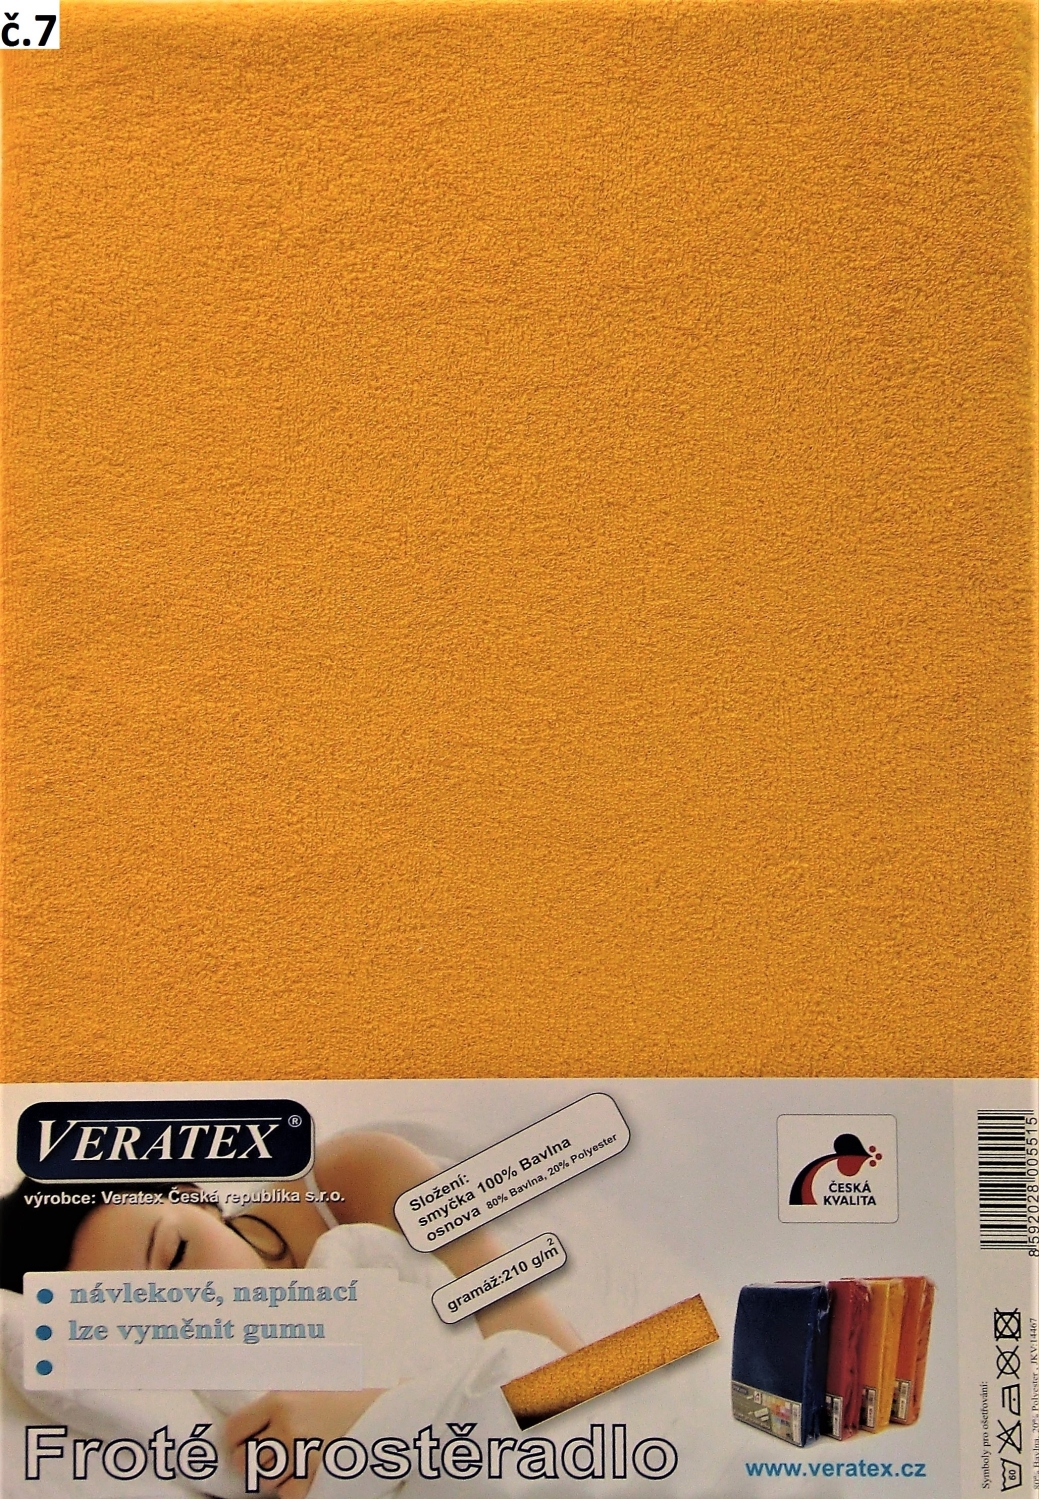 Veratex Froté prostěradlo 180x220/16 cm (č. 7-sytě žlutá)